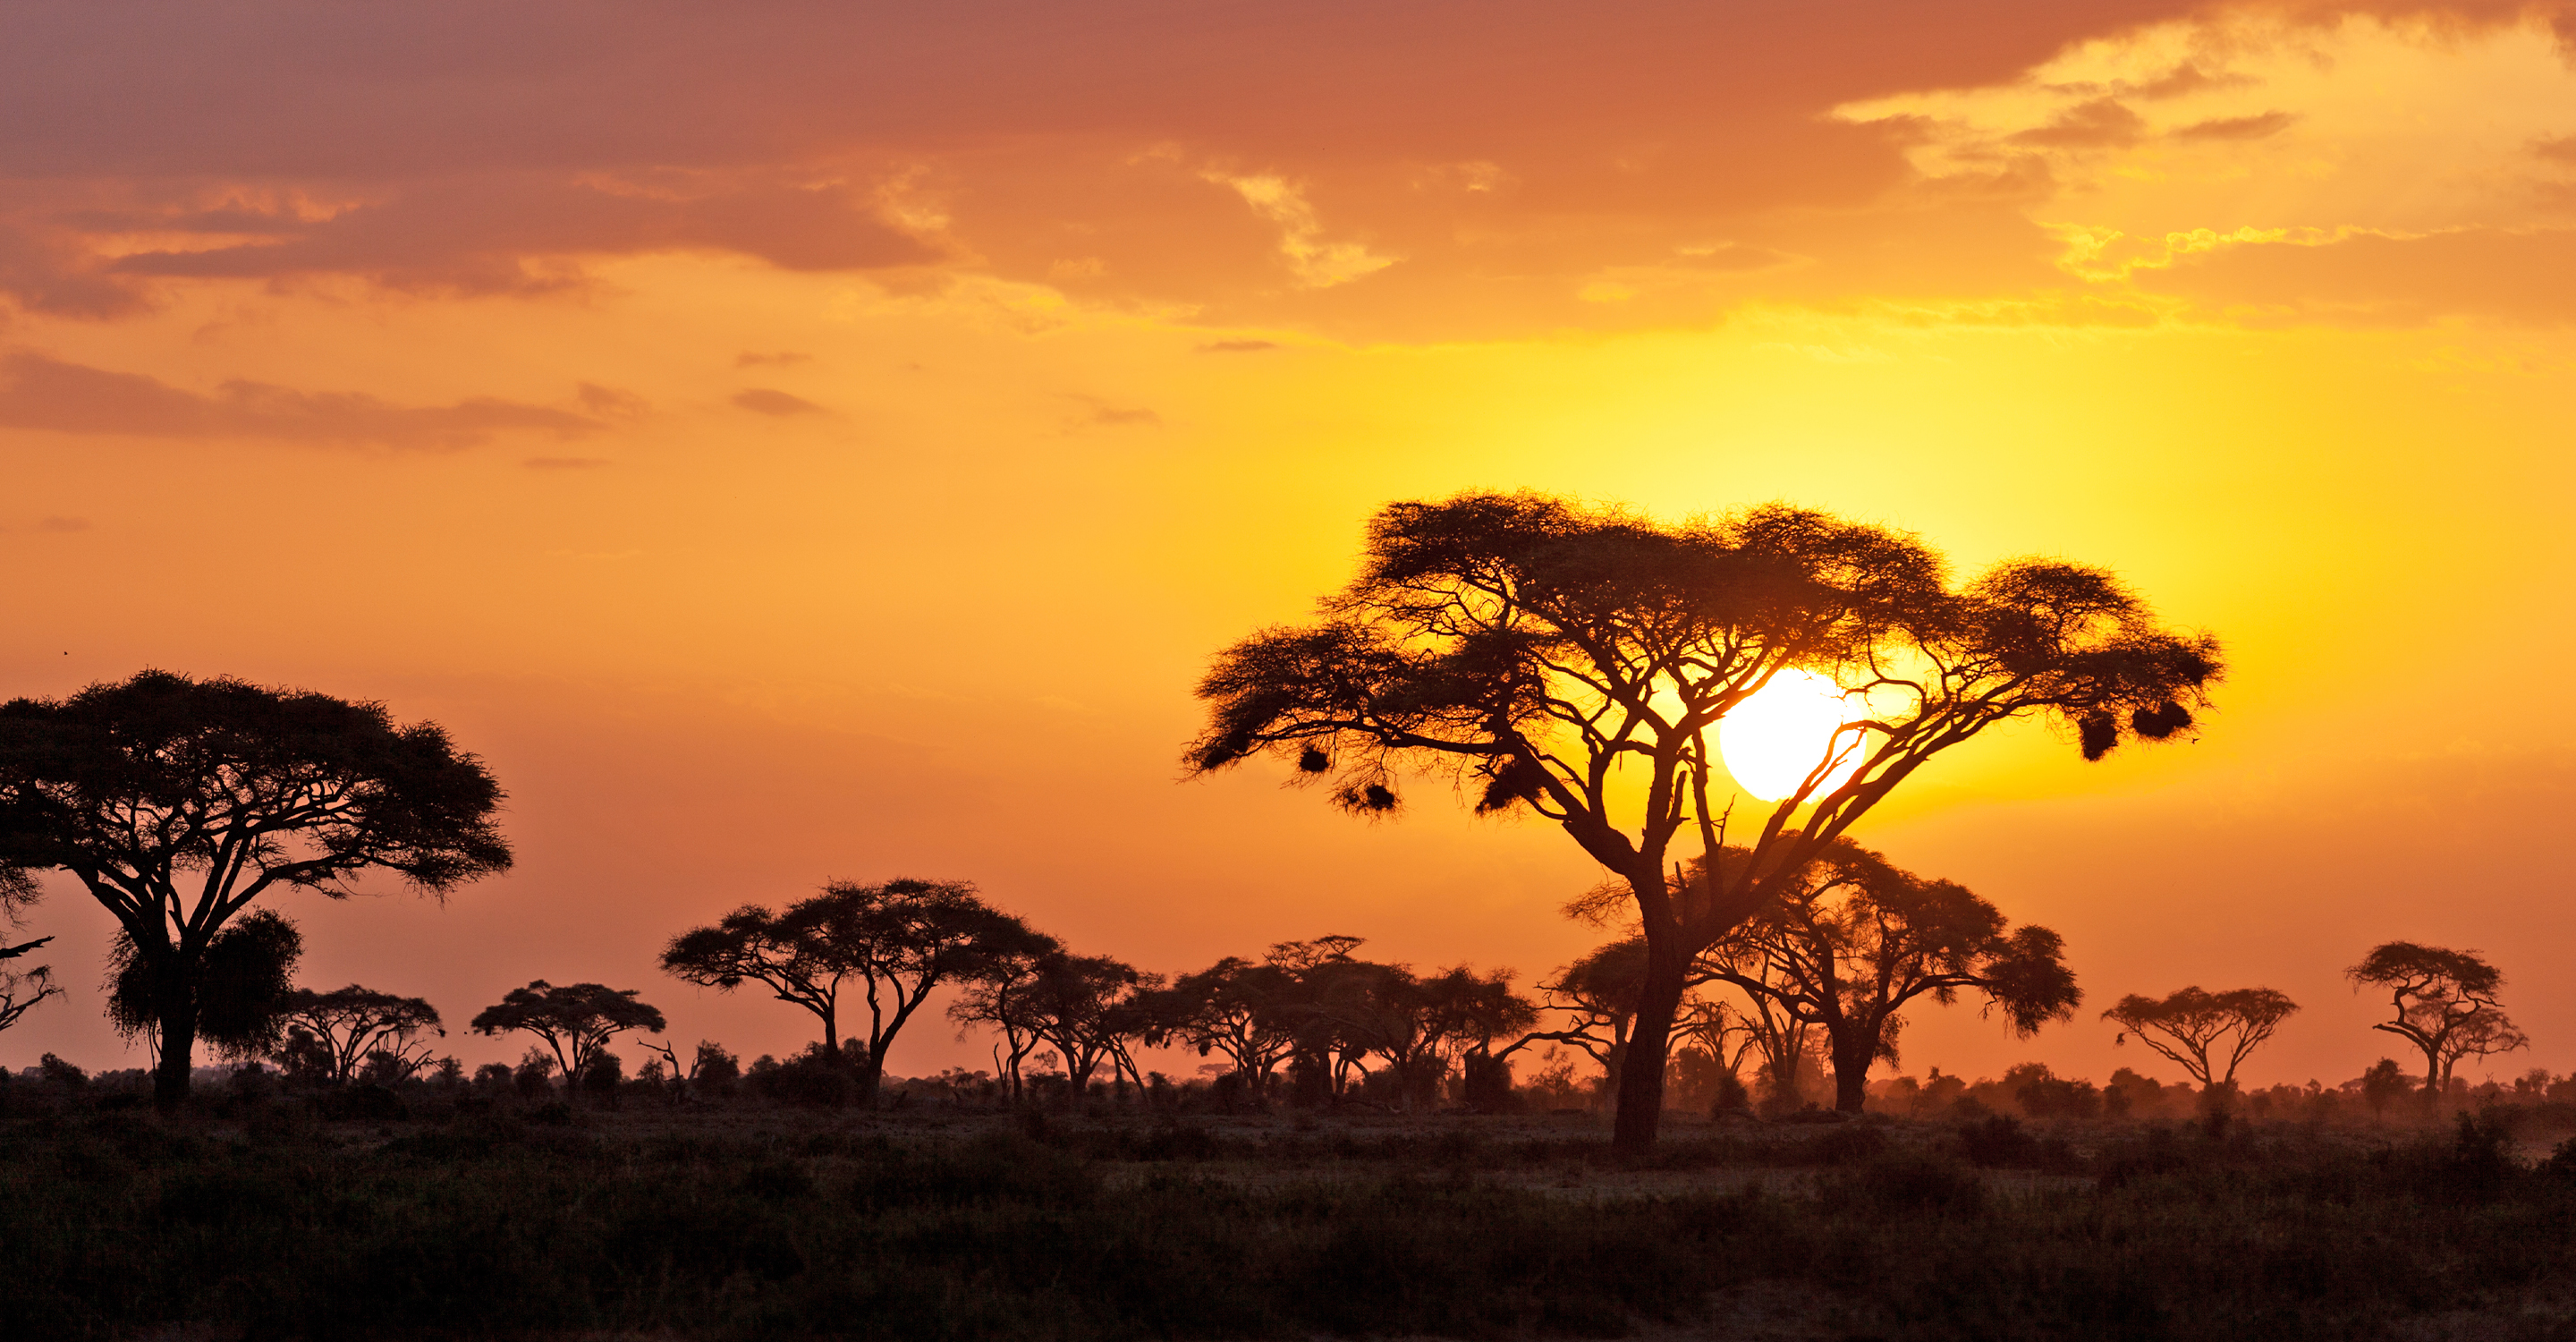 A sunset with acacia trees in the Maasai Mara National Reserve, Kenya